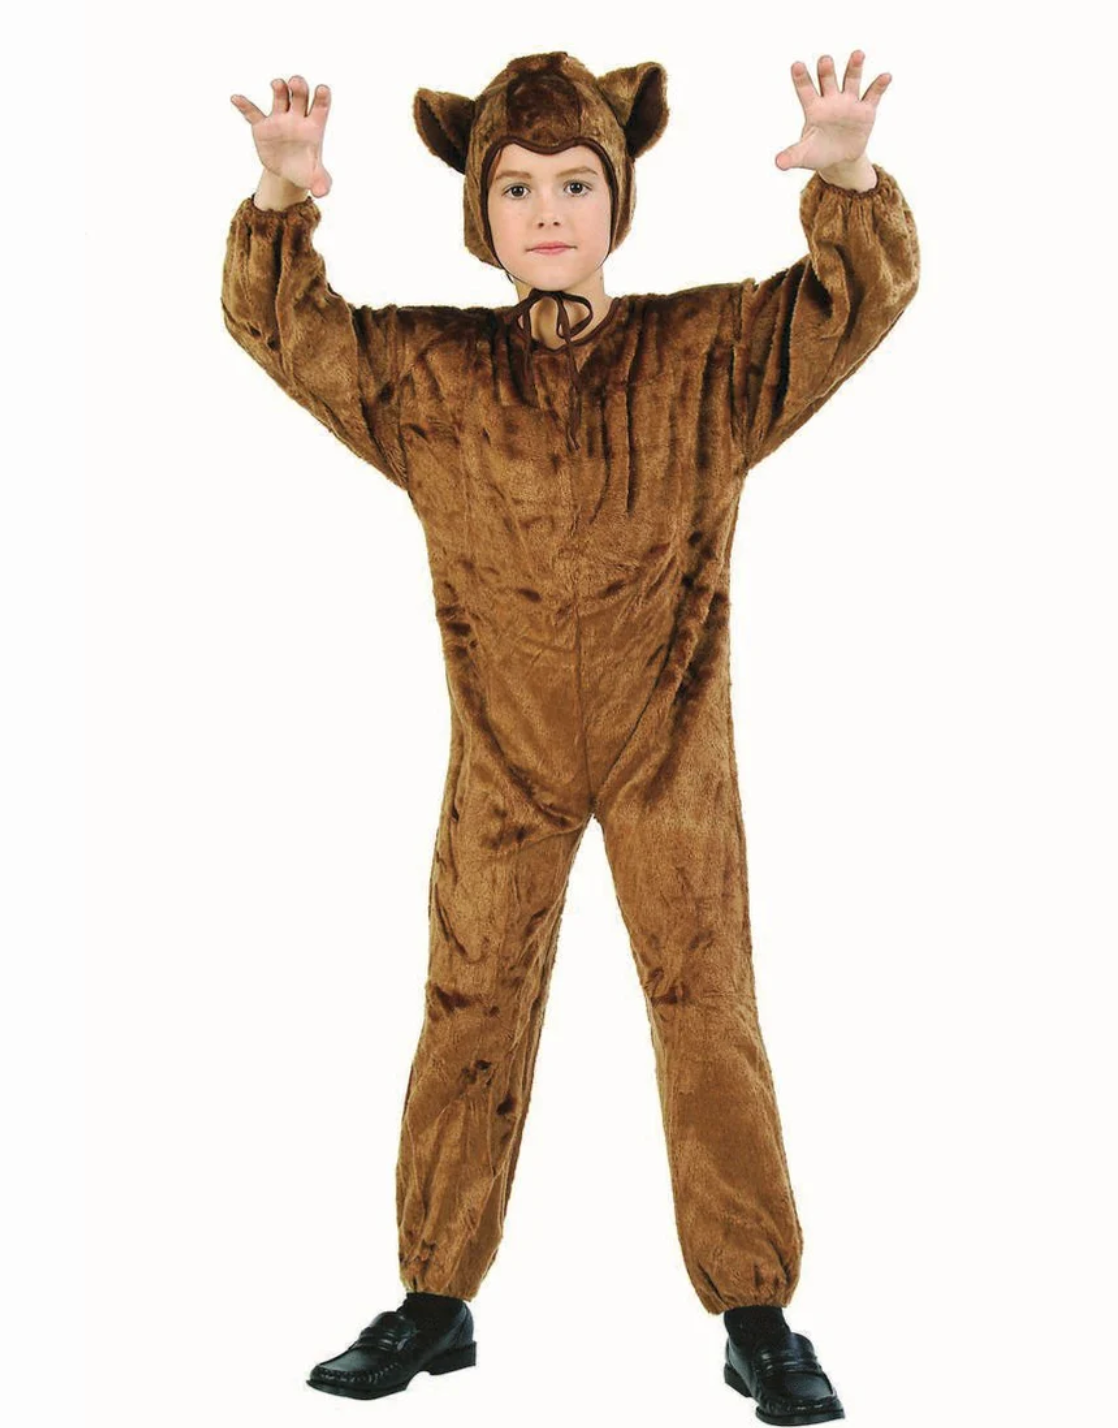 Cuddly Cub Bear Costume